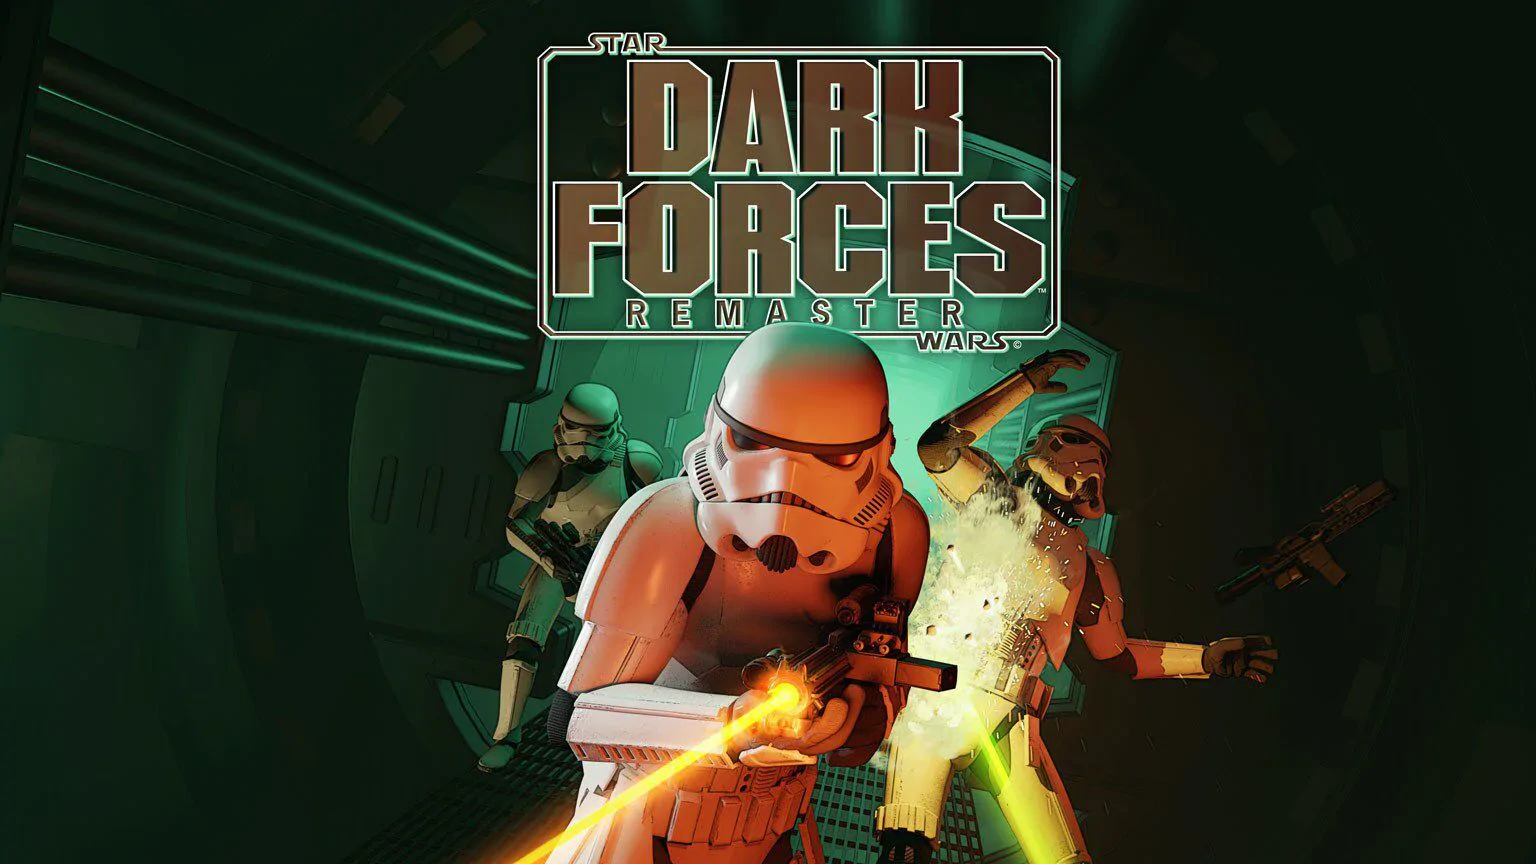 Star Wars: Dark Forces Remaster — wrażenia z rozgrywki. To nie jest gra dla młodych ludzi.